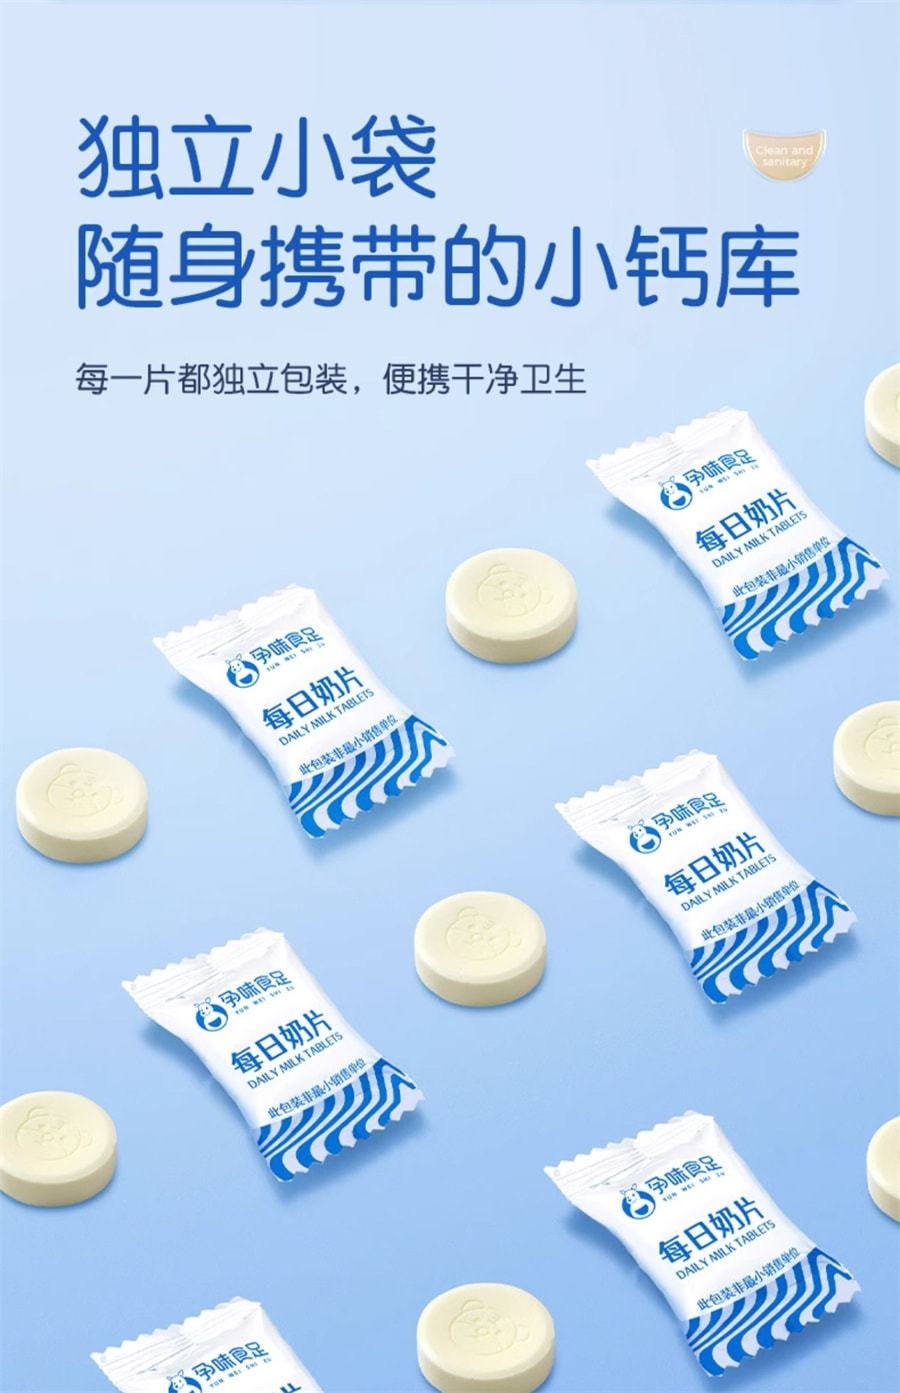 中國 孕味食足 牛奶片 孕婦零食高鈣高蛋白兒童奶貝孕期乳酪營養 60g/袋